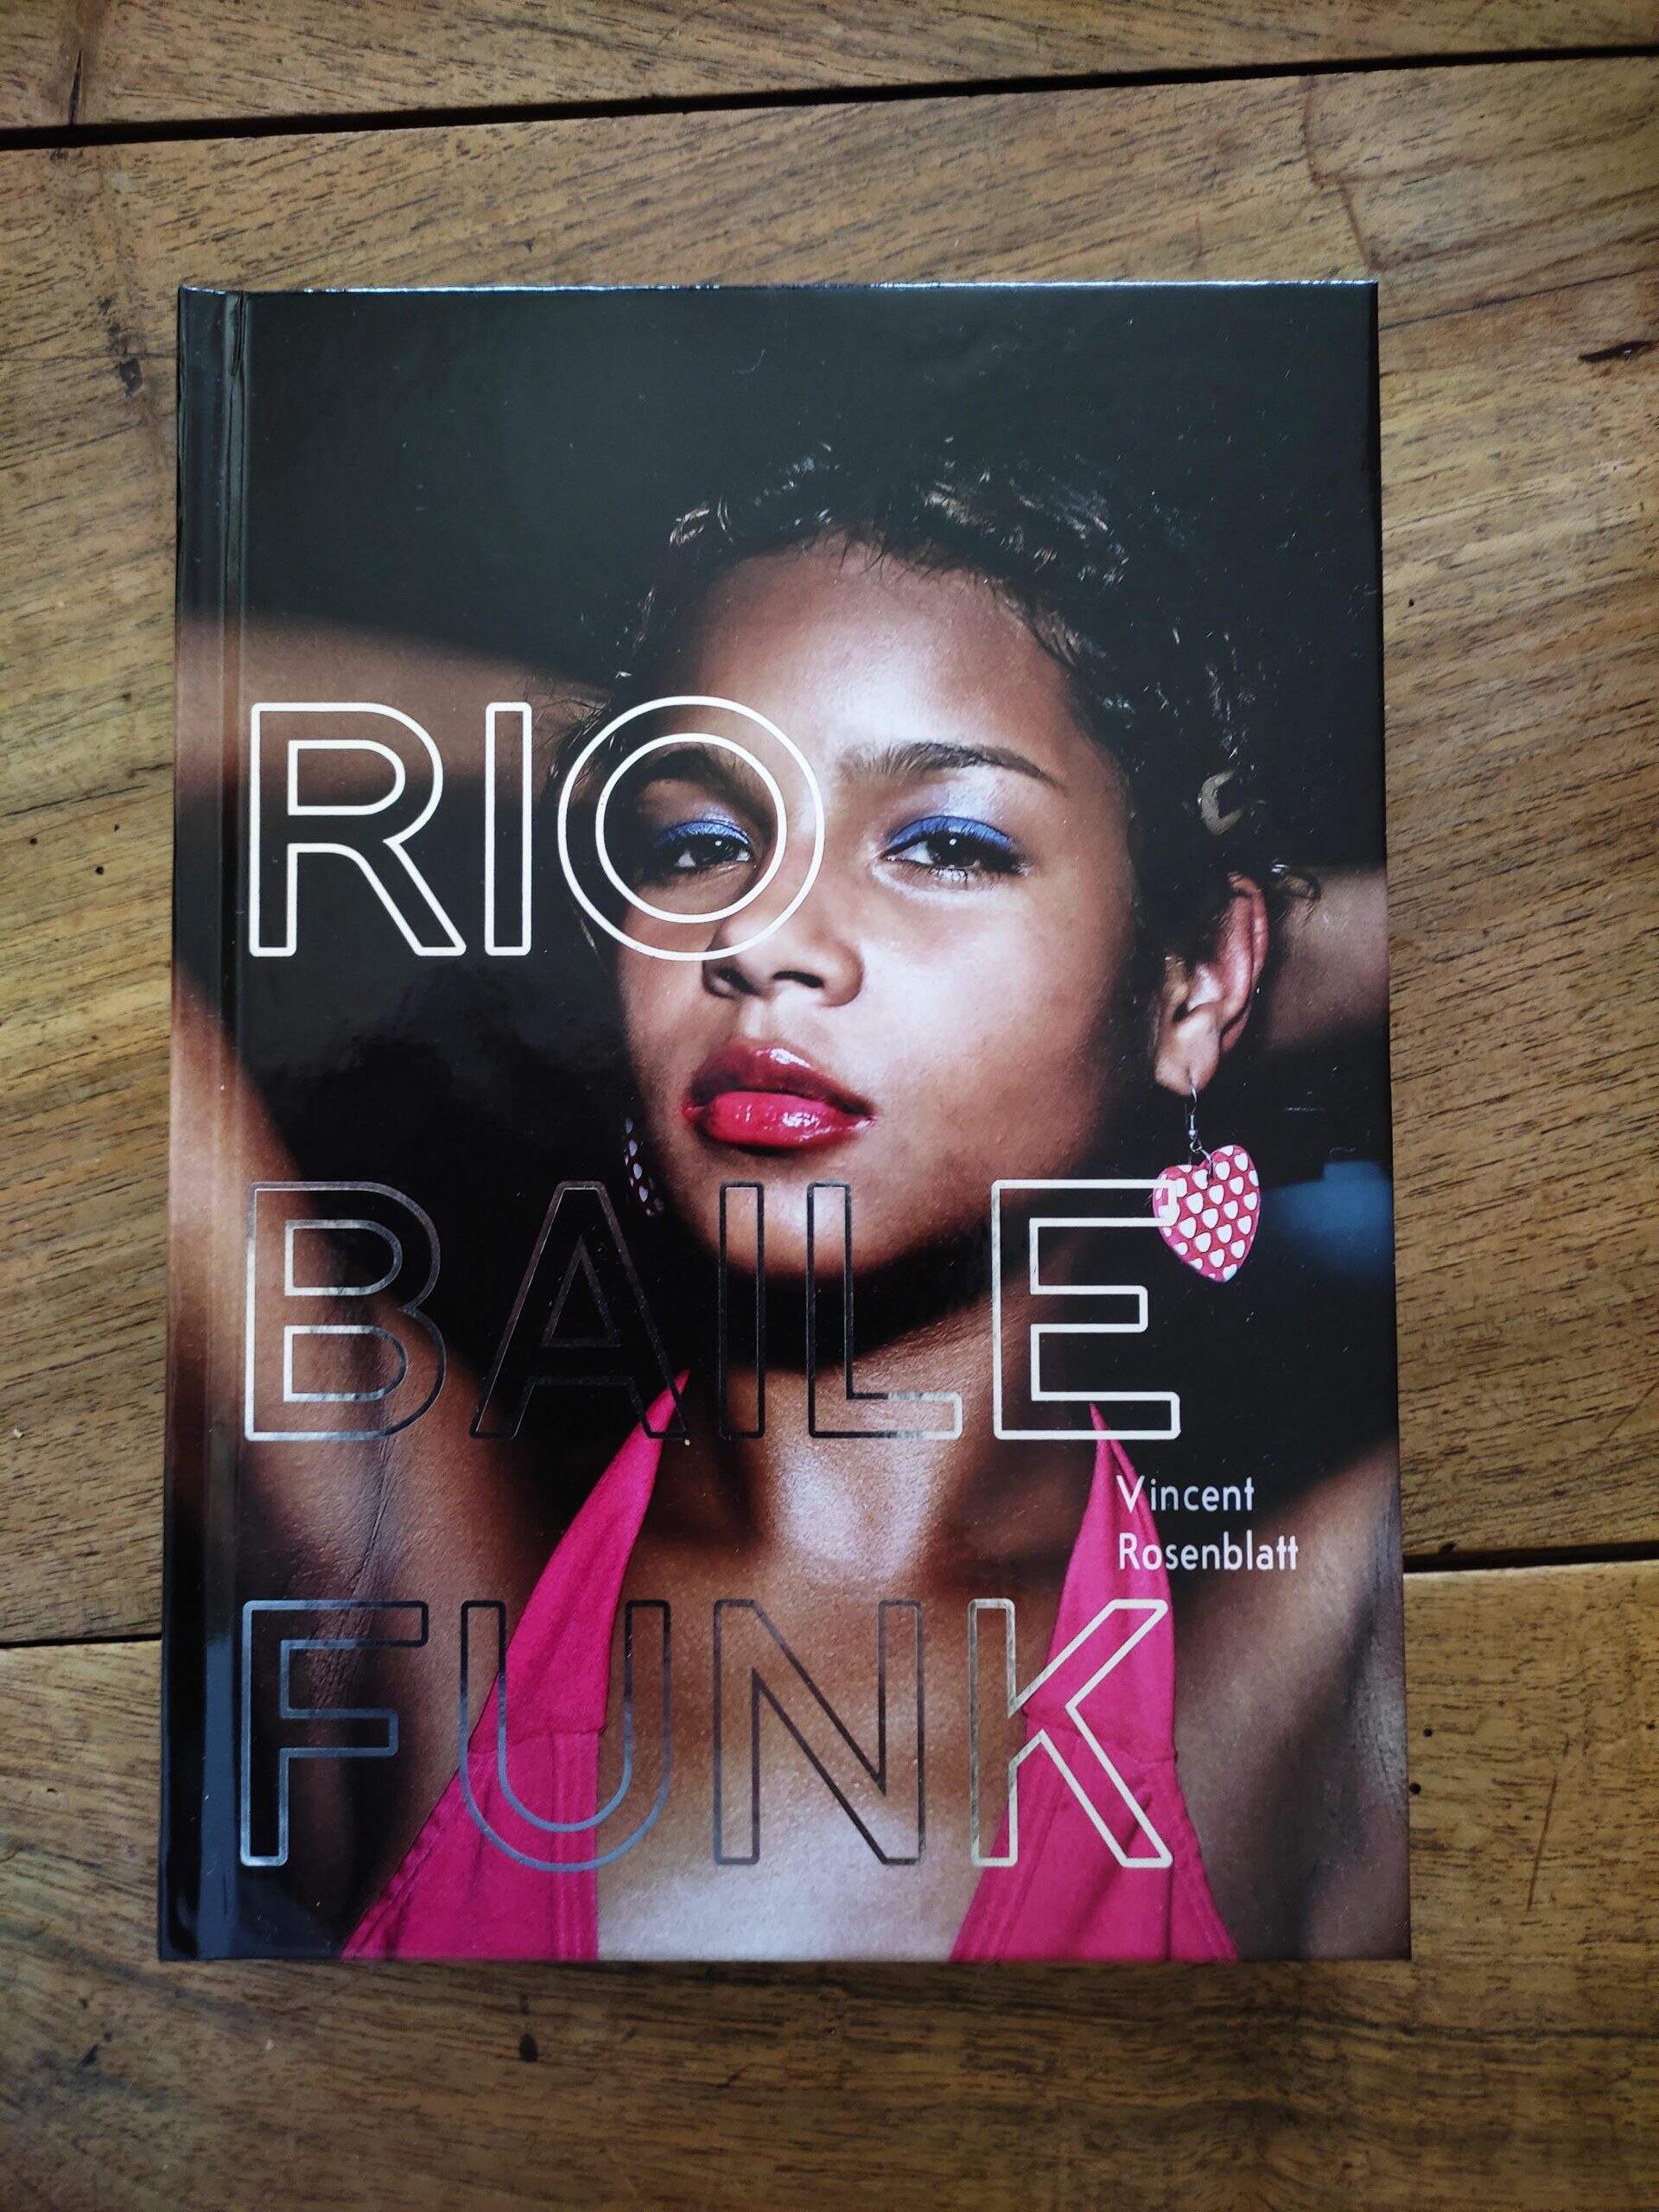 Rio Baile Funk